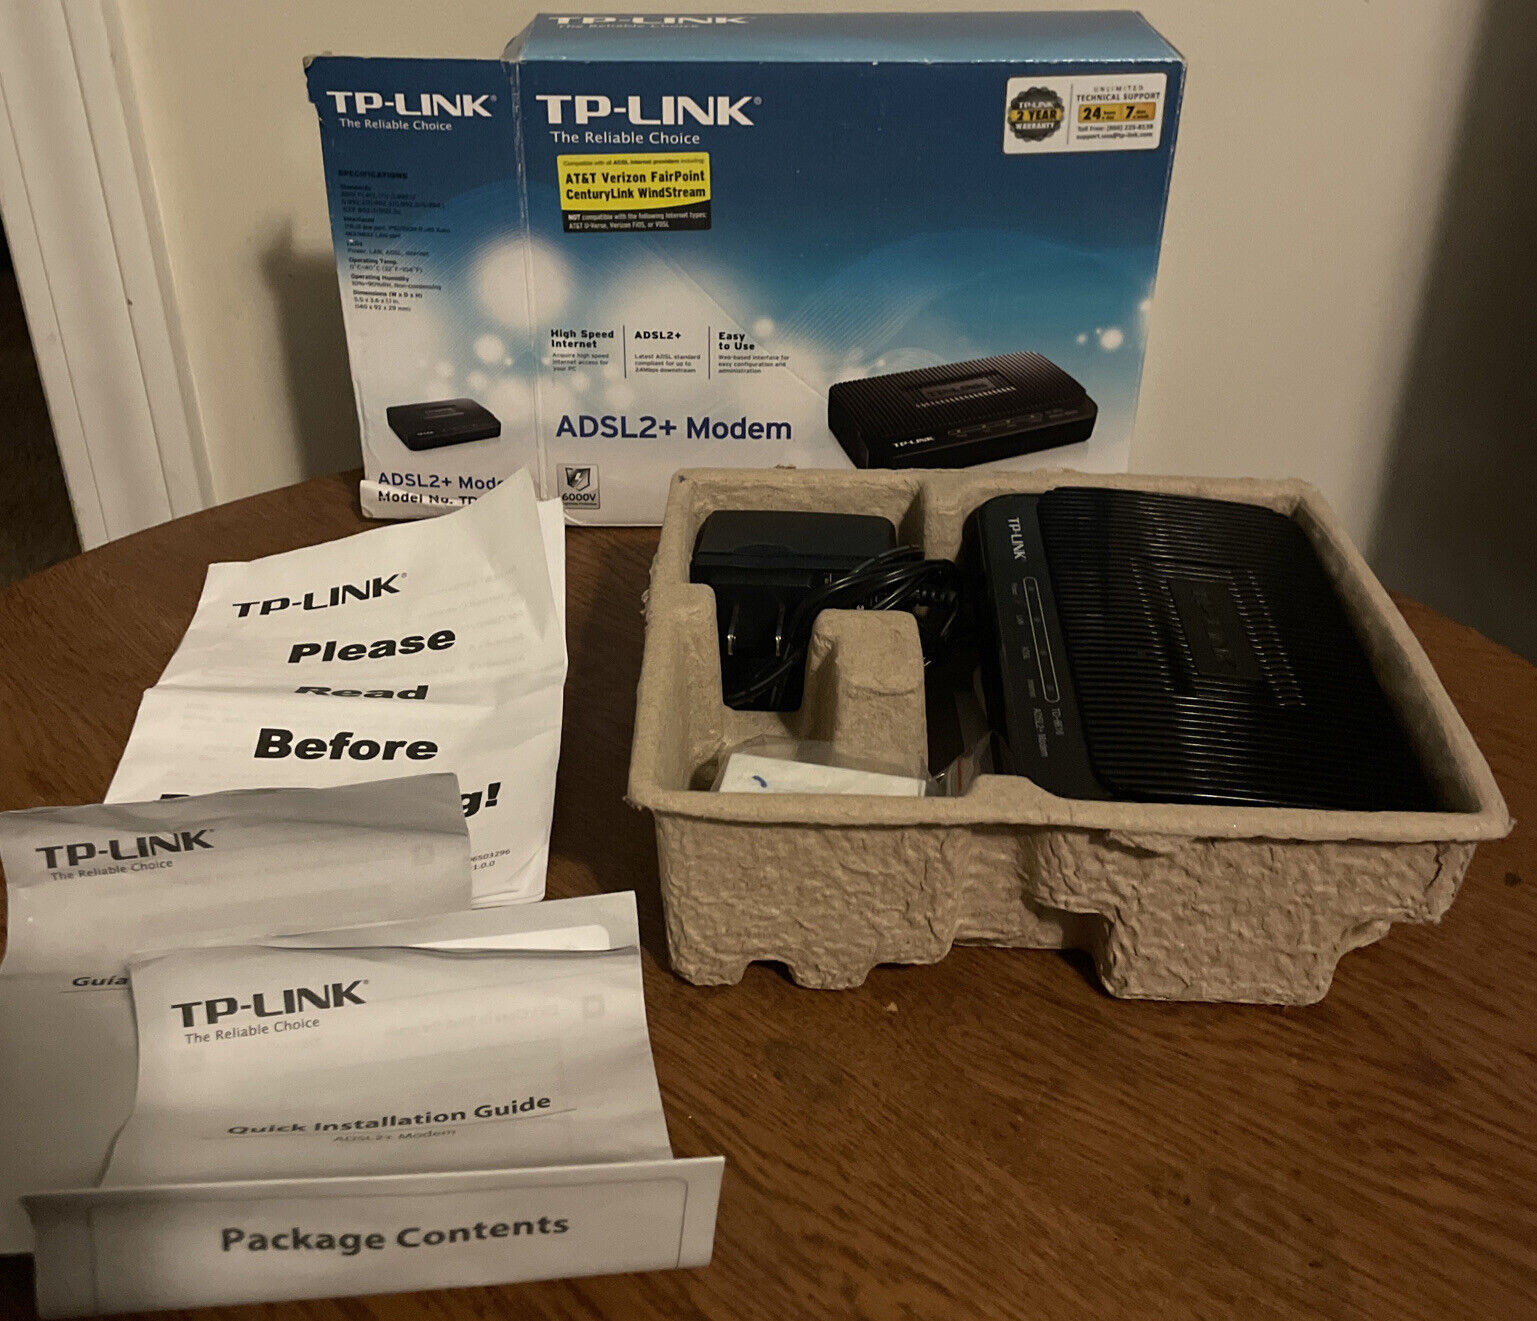 TP-Link ADSL2+ Modem, Up to 24Mbps Downstream Bandwidth Model TD-8616